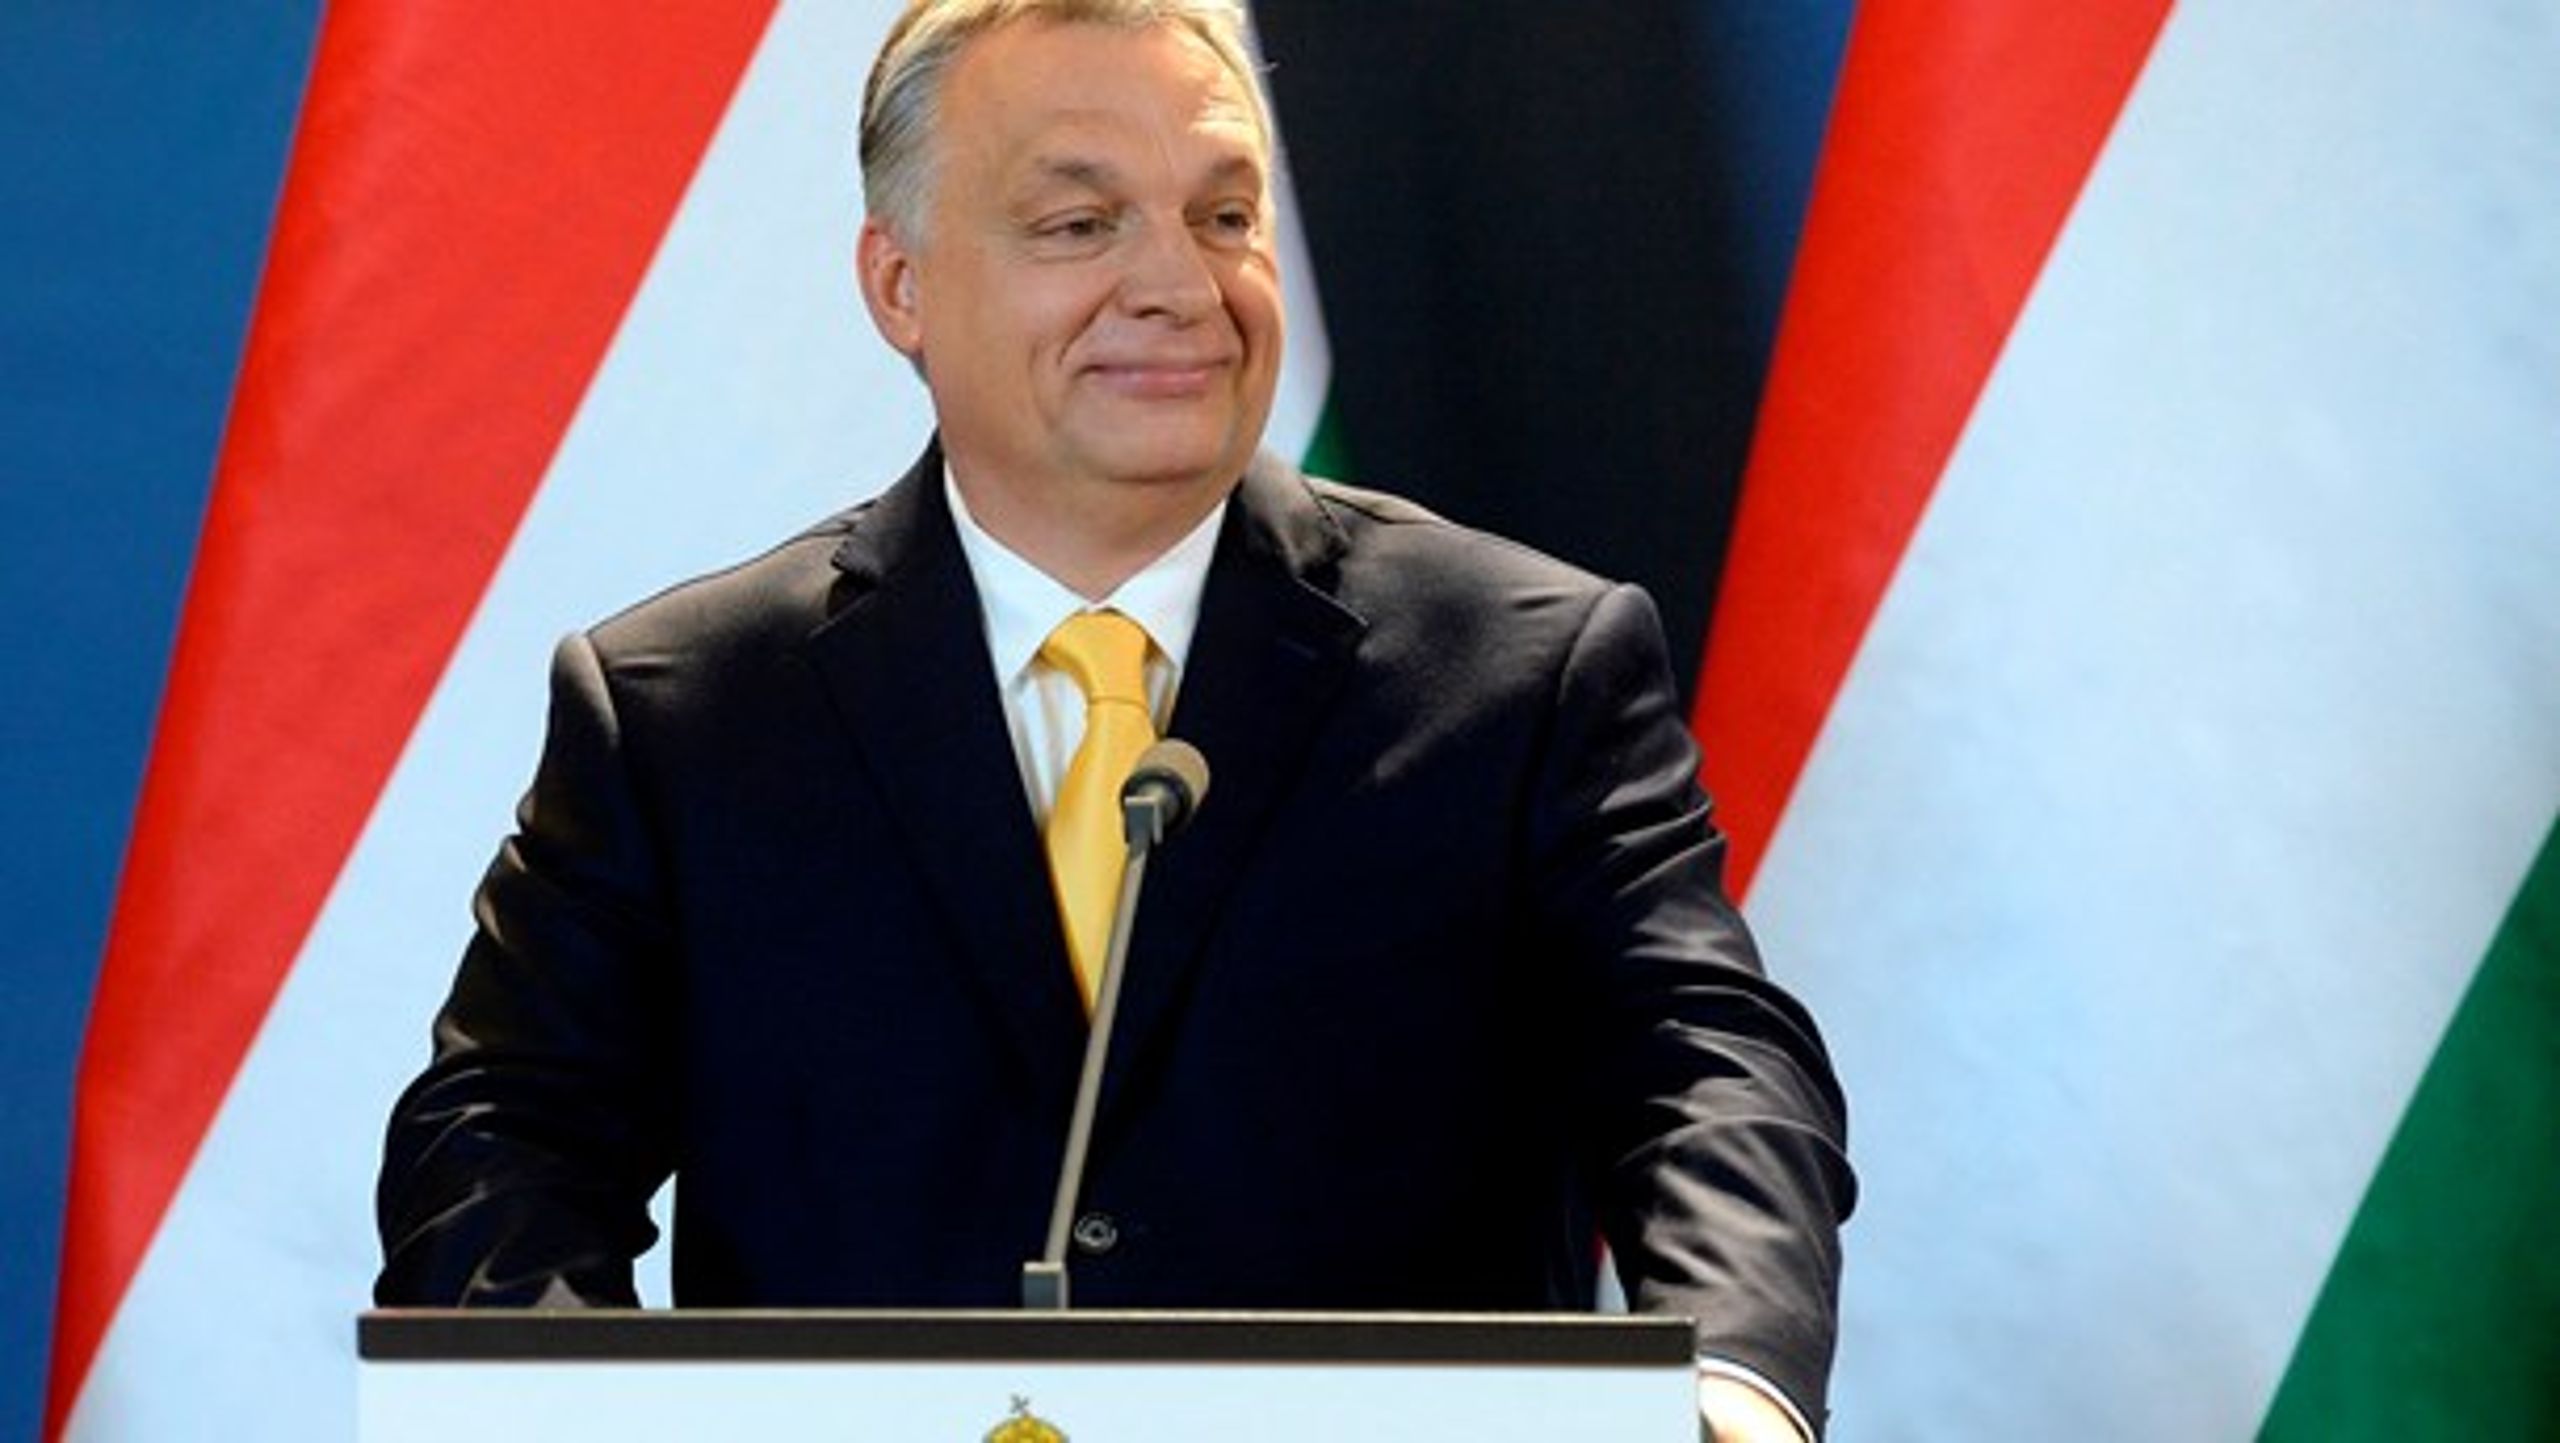 Viktor Orbán gik ud af det ungarske valg som sejrherre. Og det får nu EU's dårlige tabere til at indlede et hævntogt, mener Morten Messerschmidt (DF).